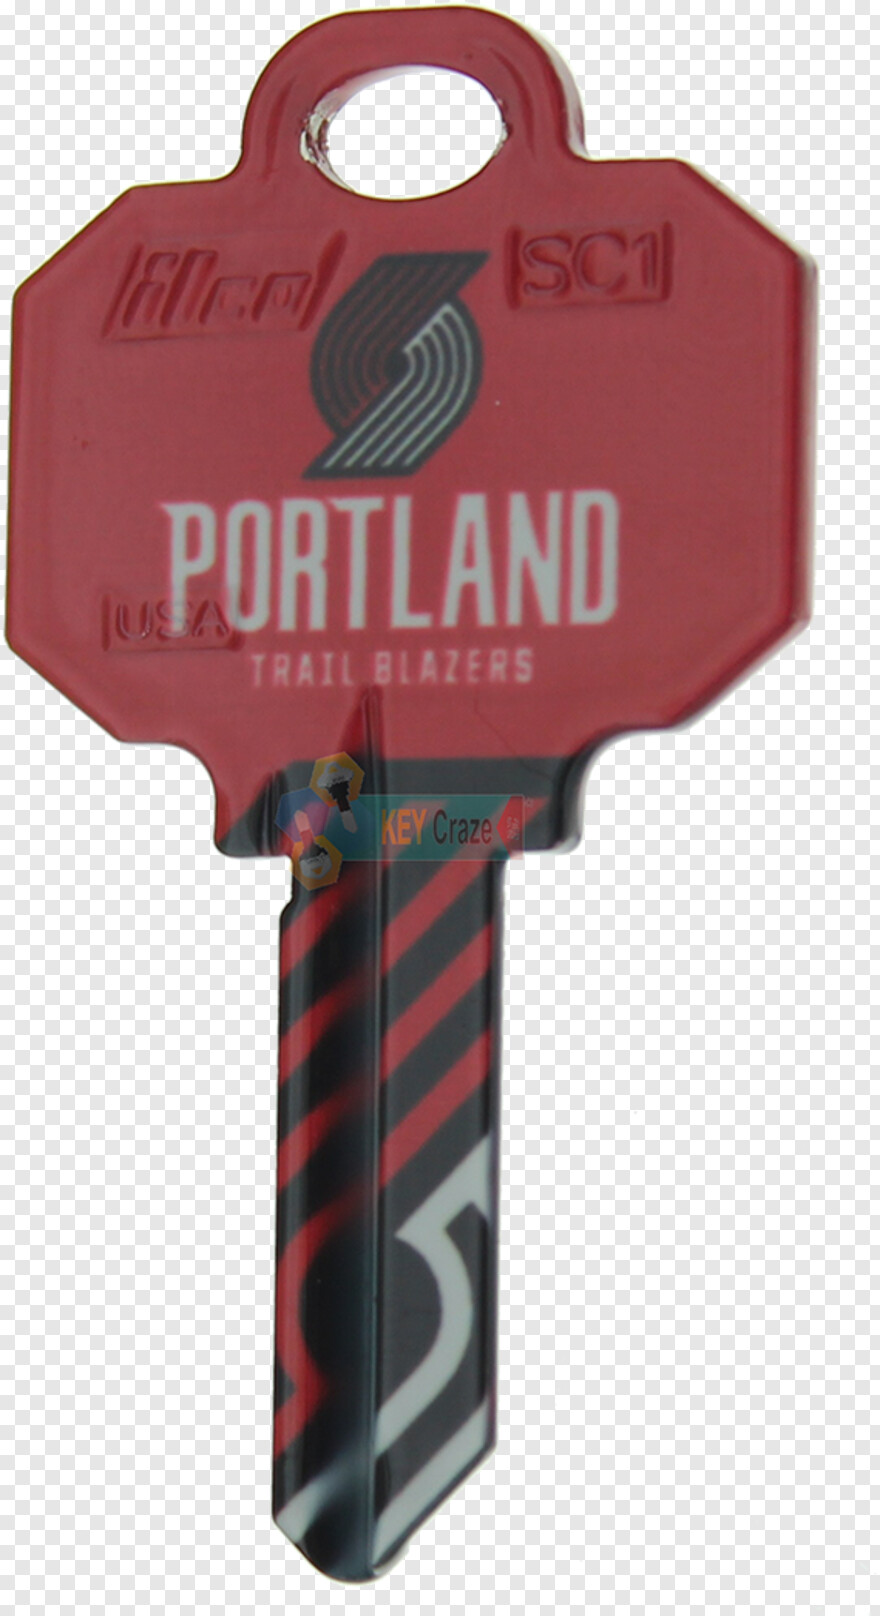 portland-trail-blazers-logo # 350691